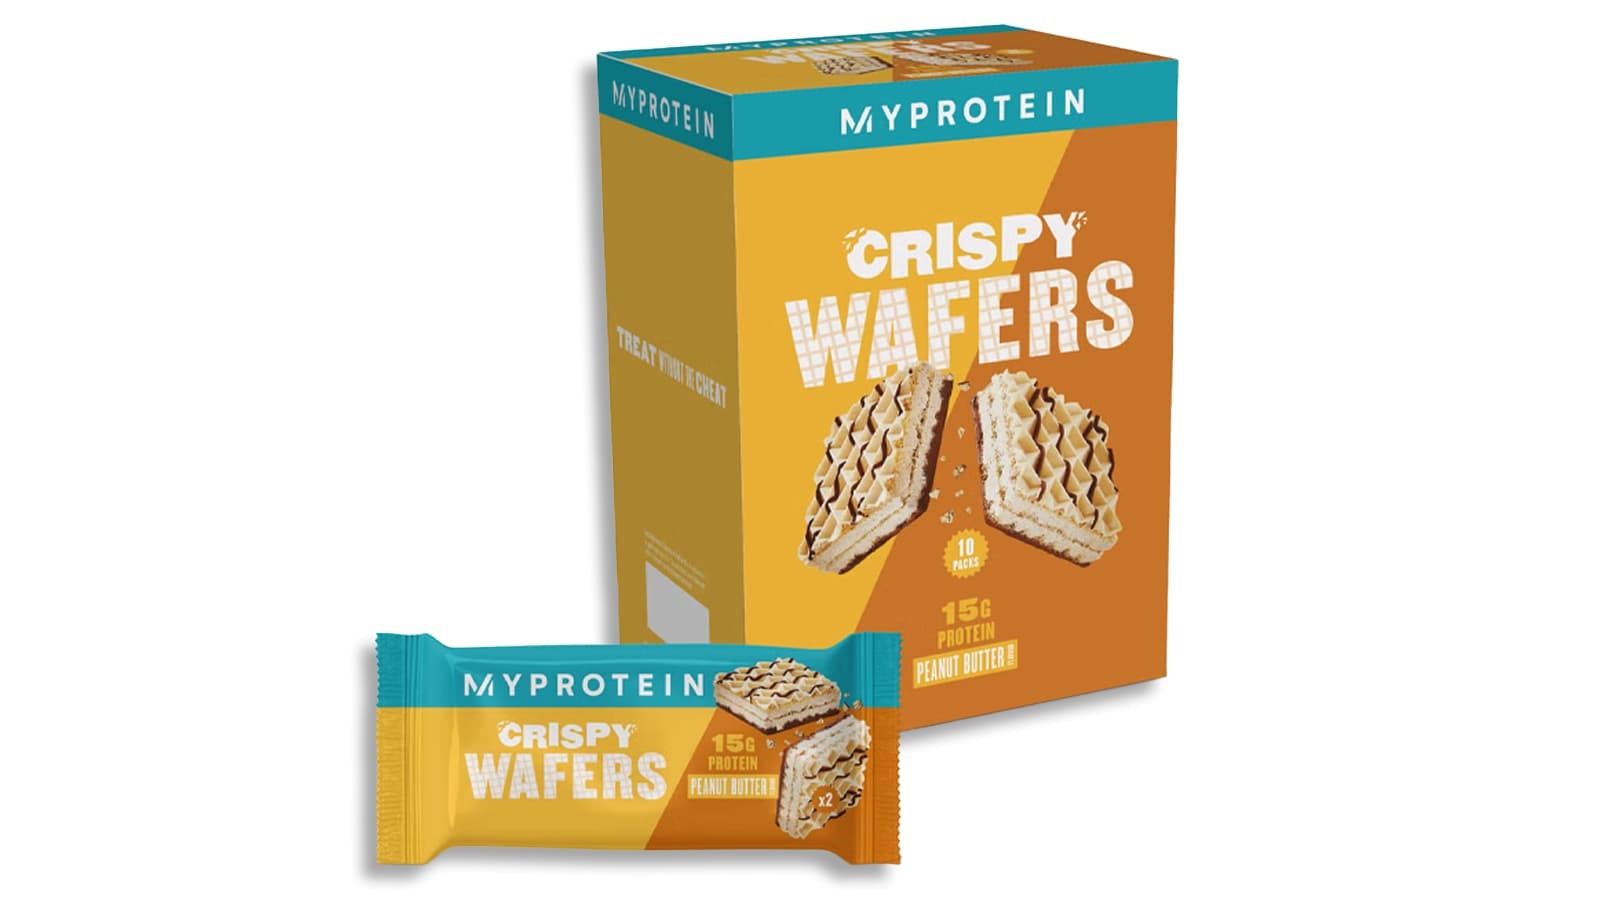 MyProtein Crispy Wafers Produkt Review. Vorschau der Verpackung einer Sorte der MyProtein Crispy Wafers.